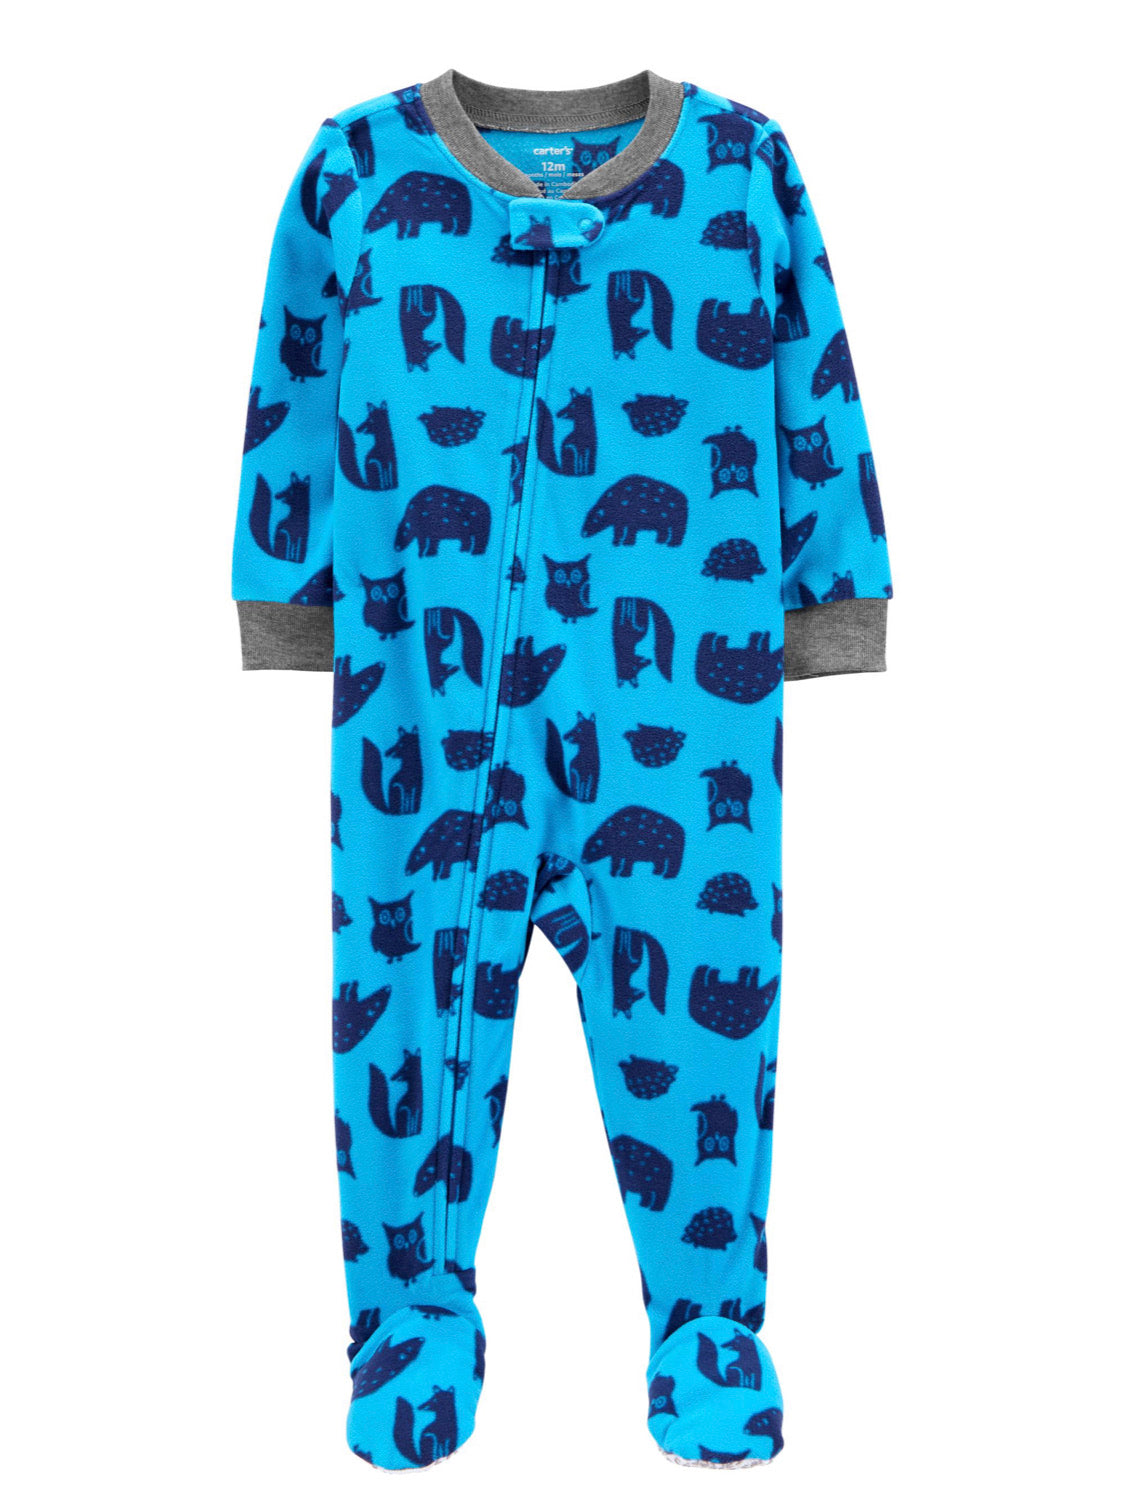 Pijamas Carter’s Blue animals